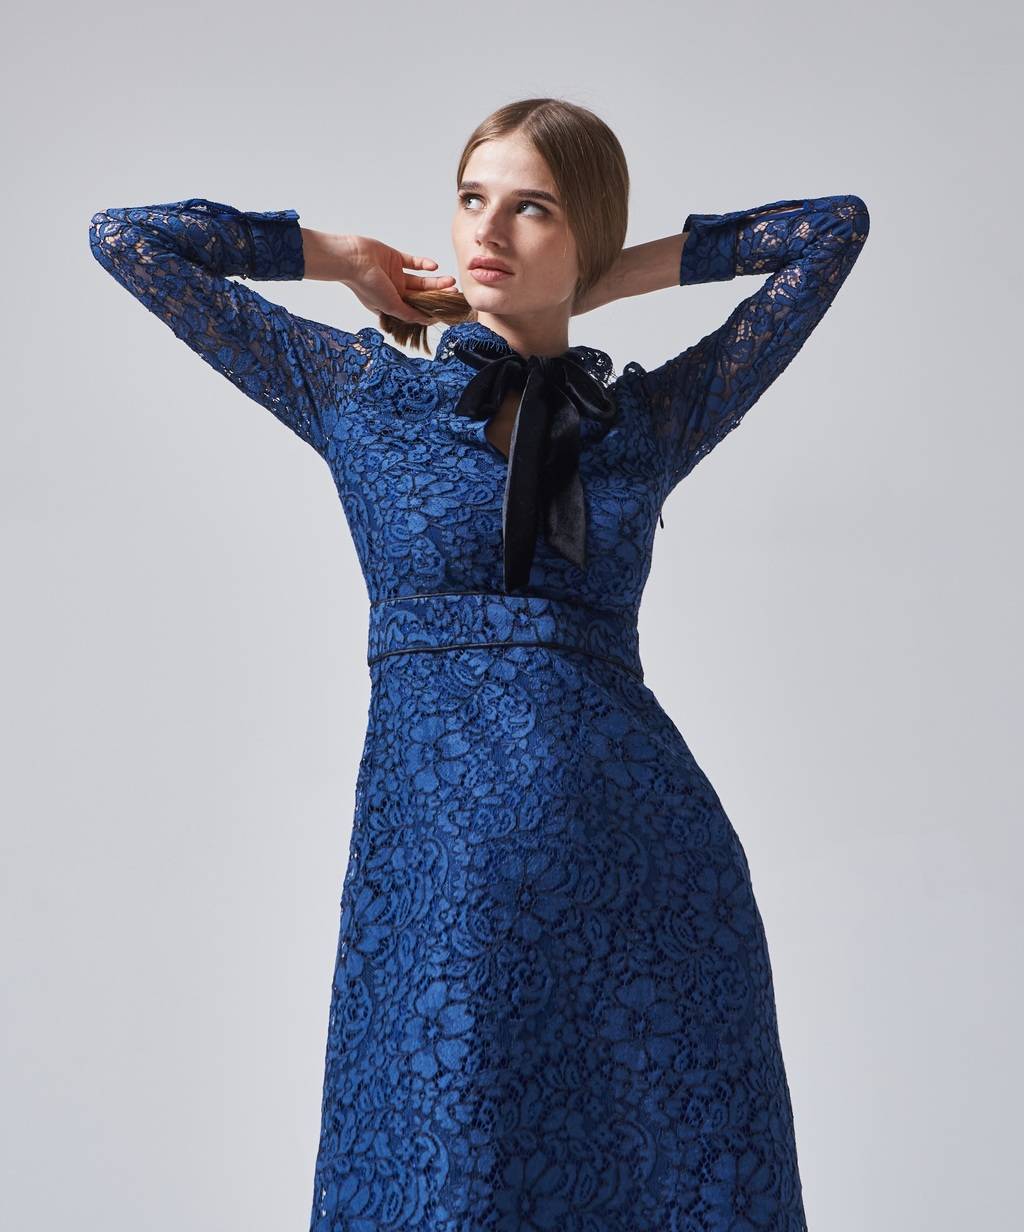 Кружевные женские платья купить недорого в интернет-магазине GroupPrice